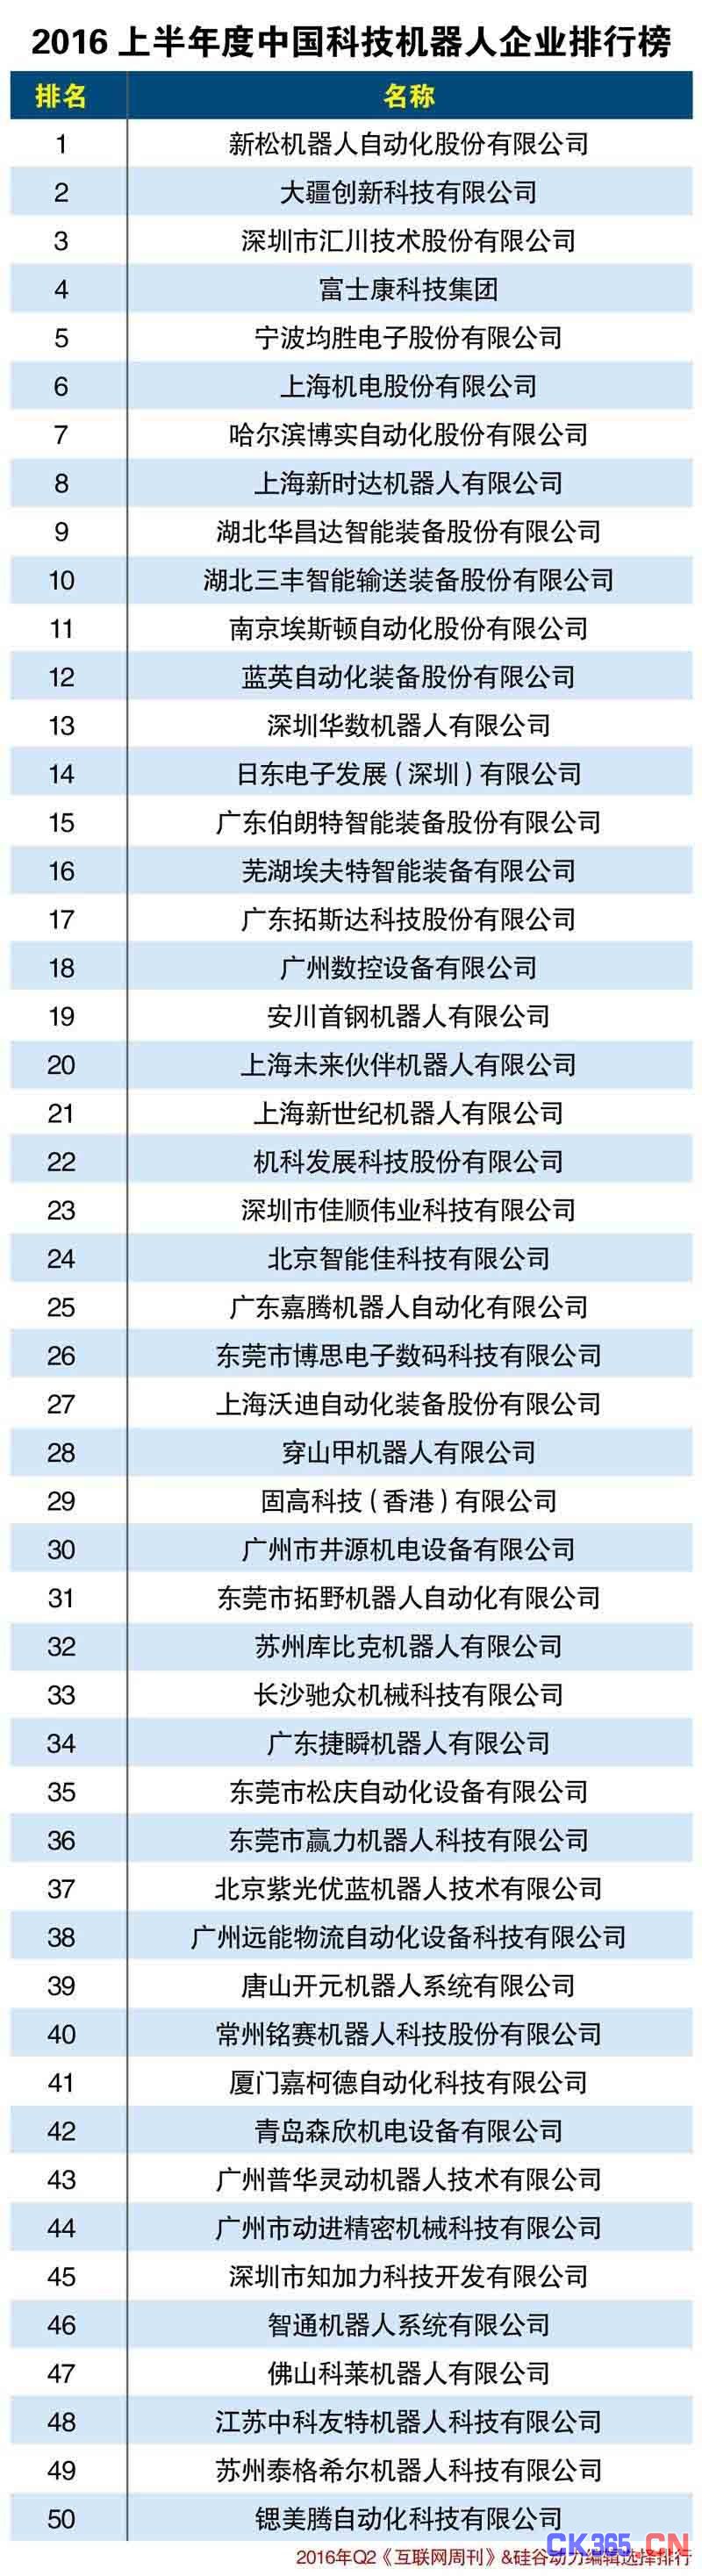 2016中国科技机器人企业排行榜